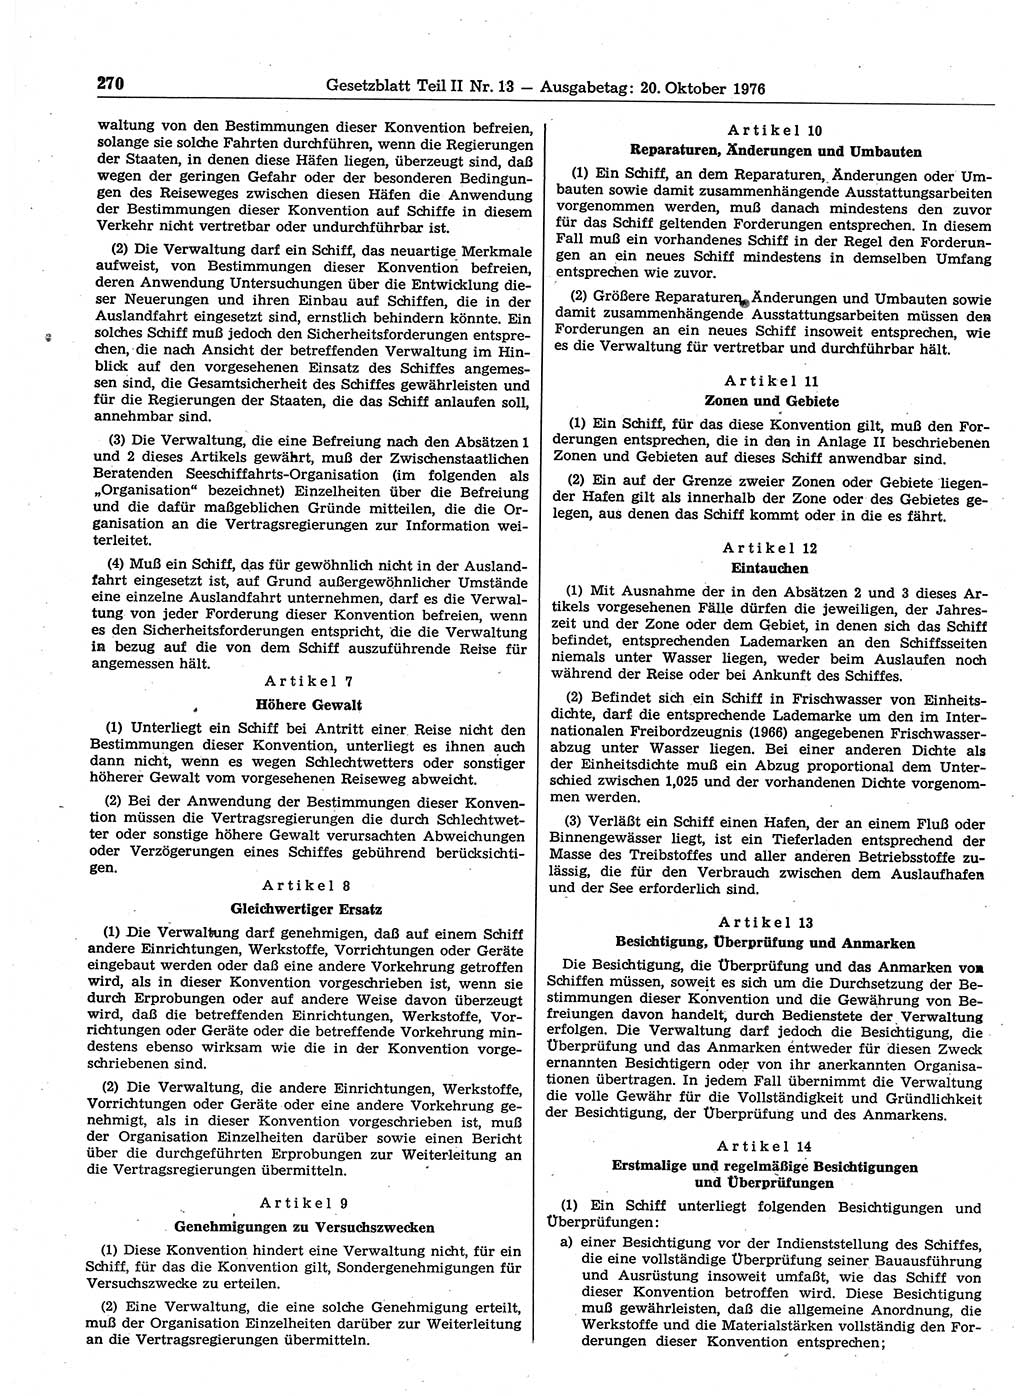 Gesetzblatt (GBl.) der Deutschen Demokratischen Republik (DDR) Teil ⅠⅠ 1976, Seite 270 (GBl. DDR ⅠⅠ 1976, S. 270)